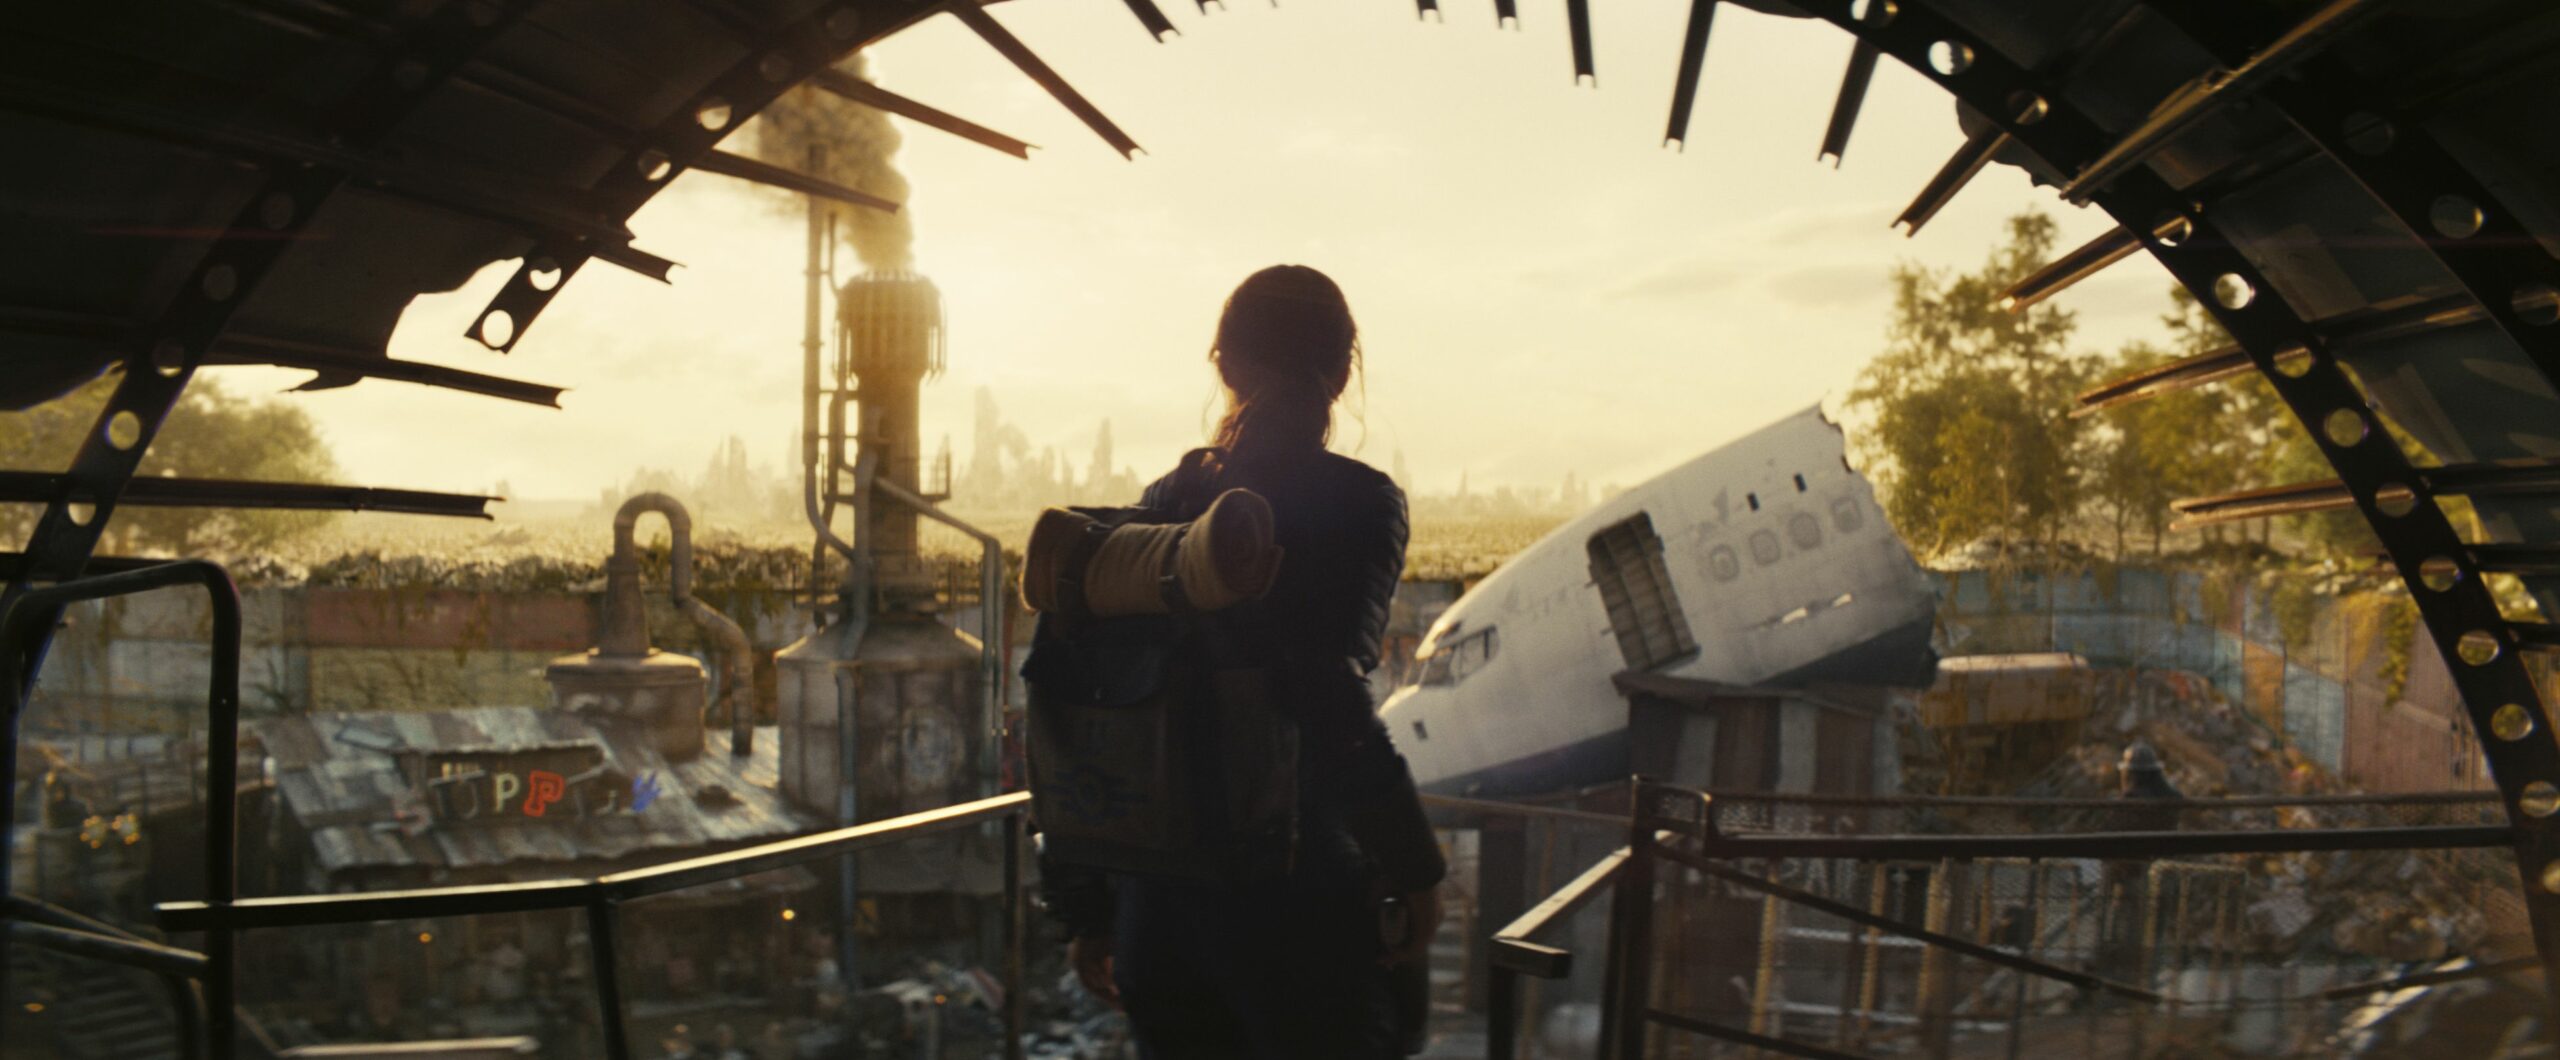 #Fallout: Amazon veröffentlicht ersten Teaser-Trailer zur Live-Action-Serie